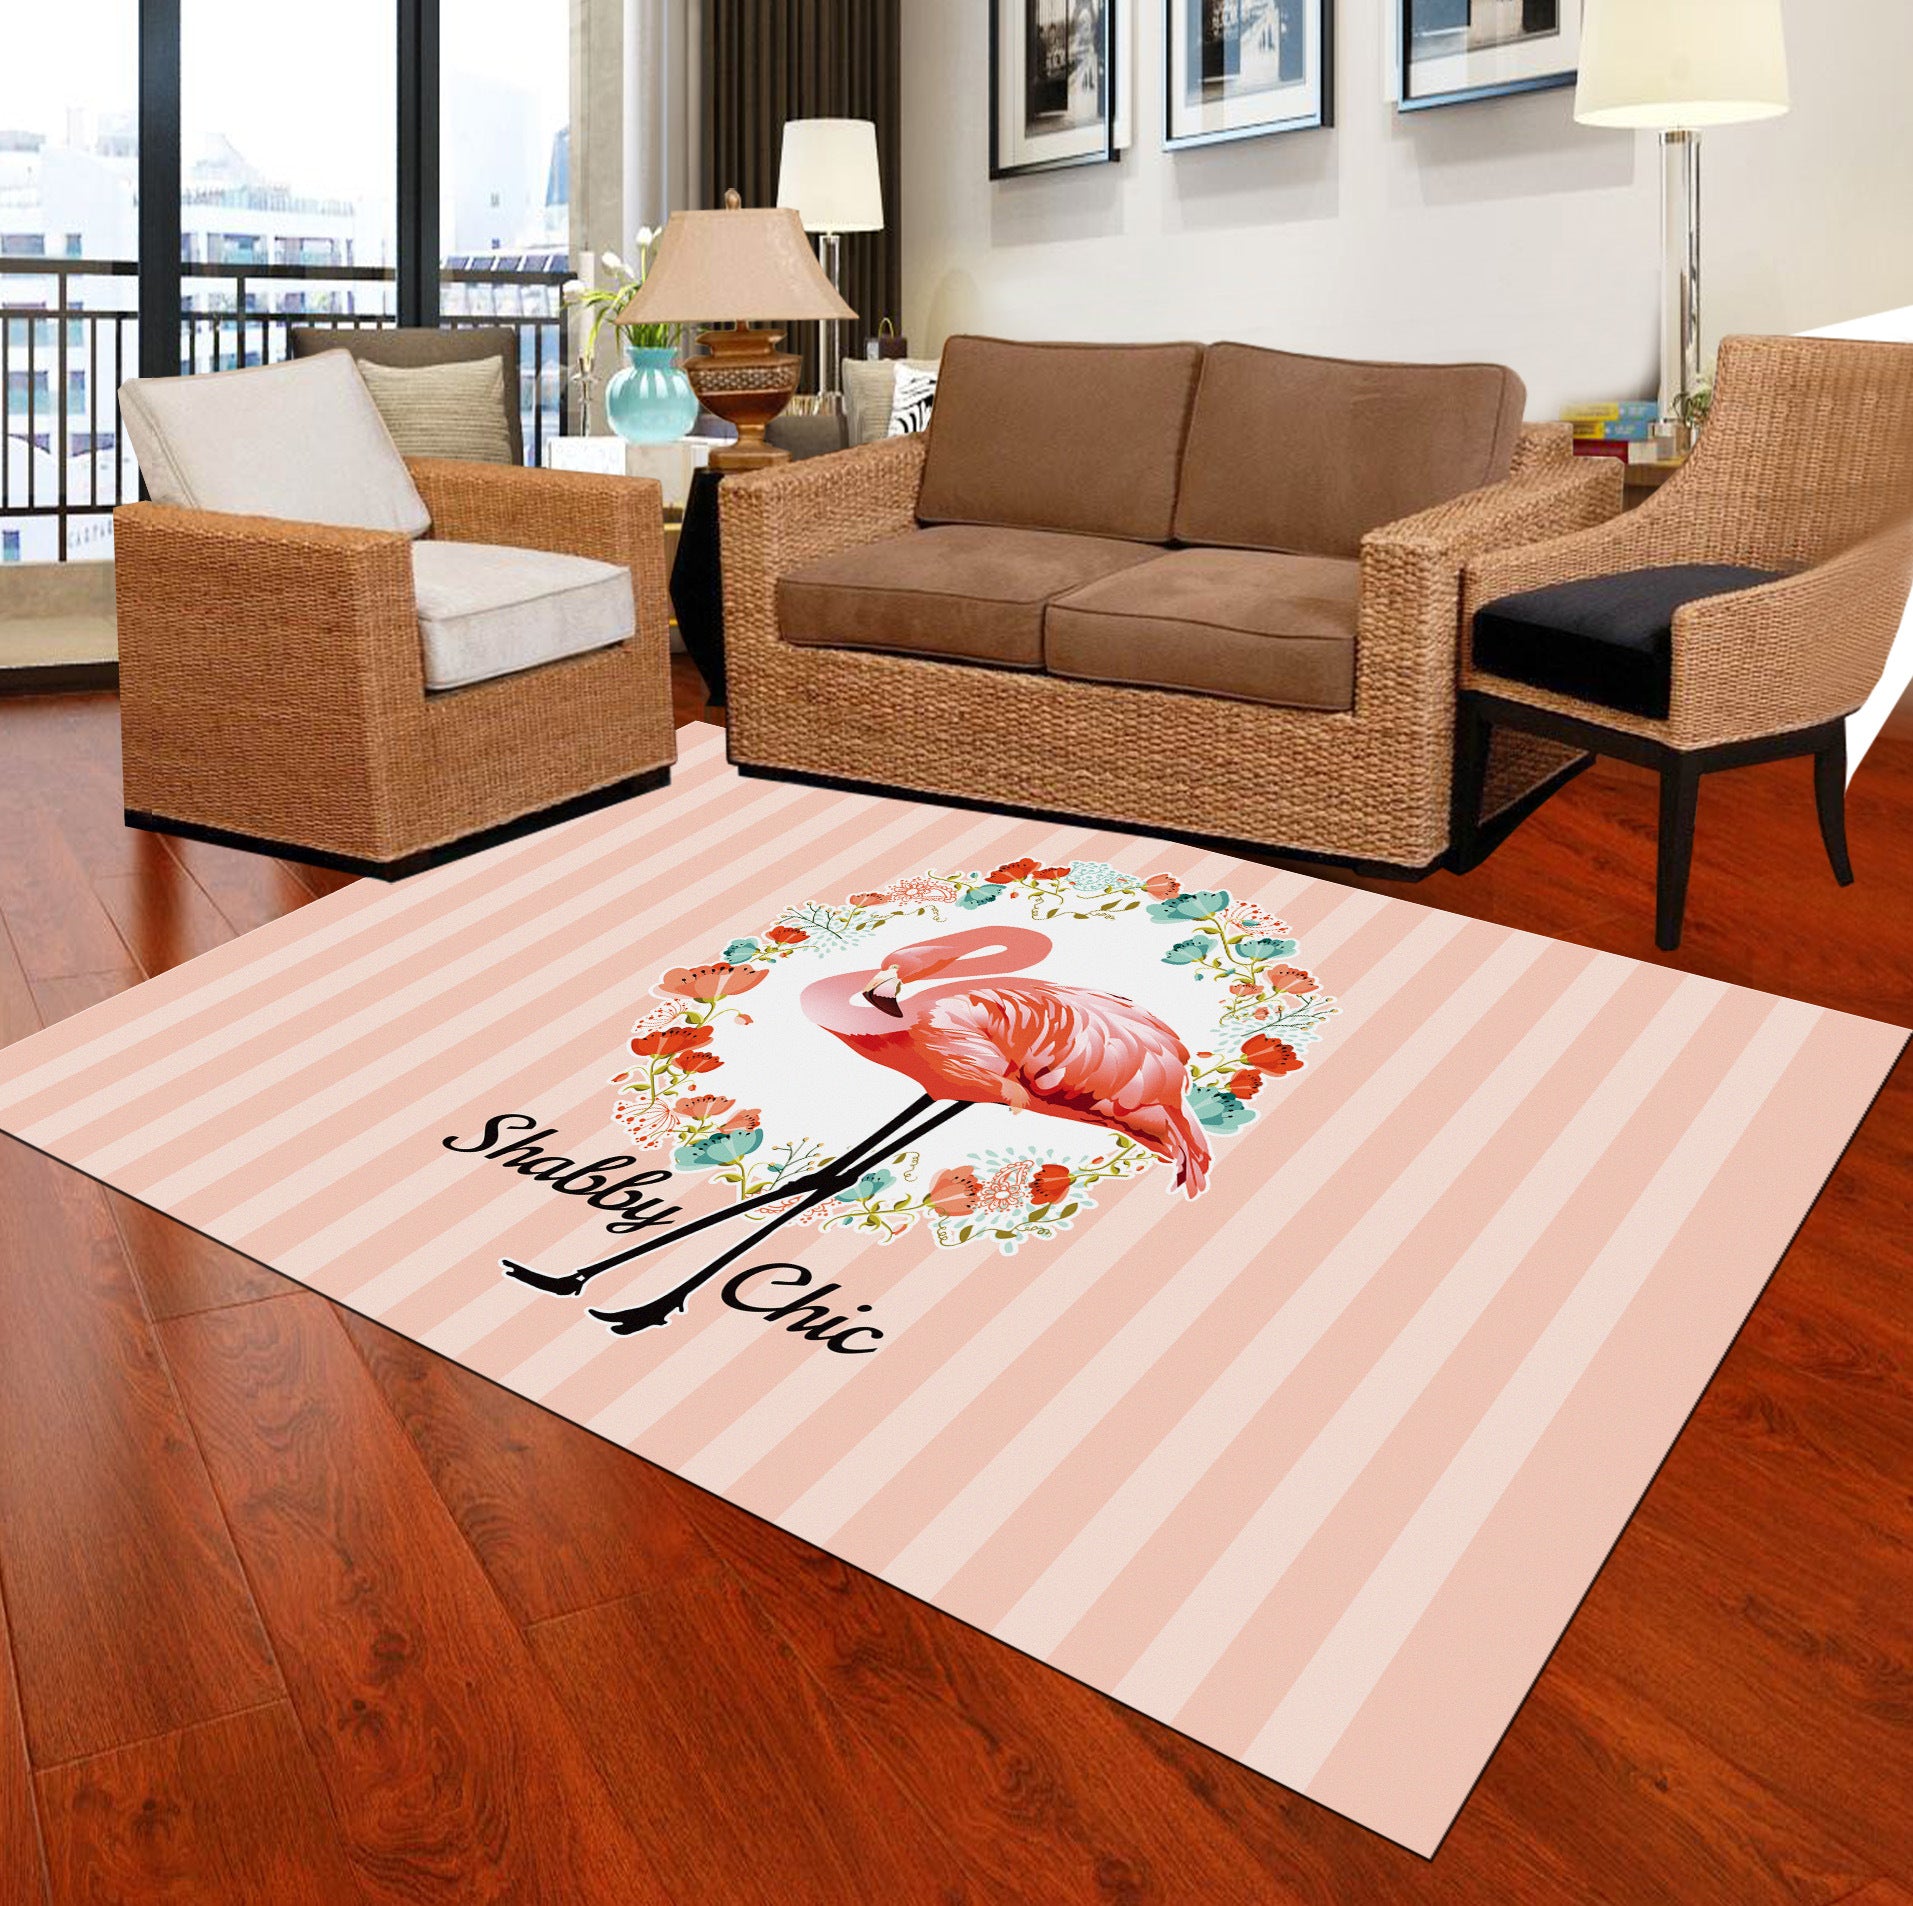 Tropix Intérieur Tropix Rapis multi-couleurs Flamingo Carpet Anti-Slip Backing Tyms résistant Machine Washable pour salle familiale